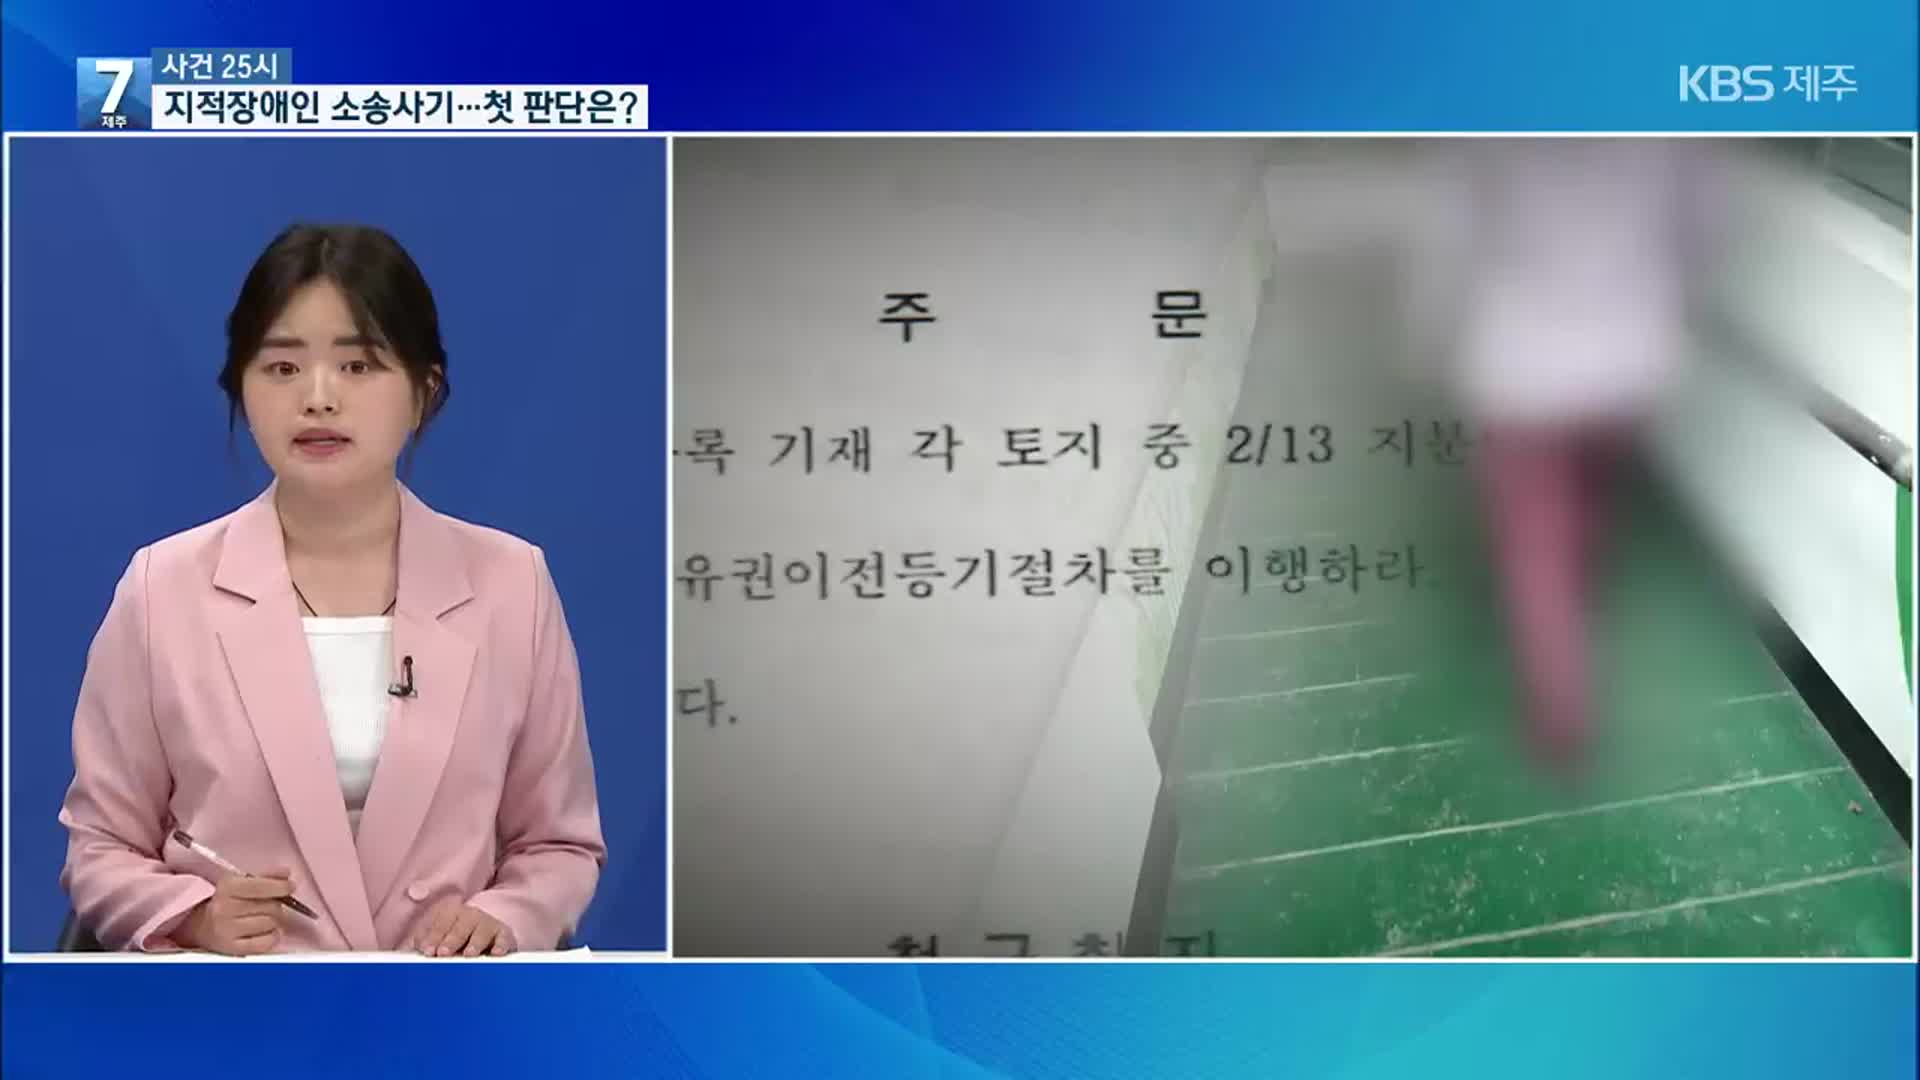 [사건 25시] 지적장애인 상대 억대 소송사기…1심 재판부 징역 4년 선고